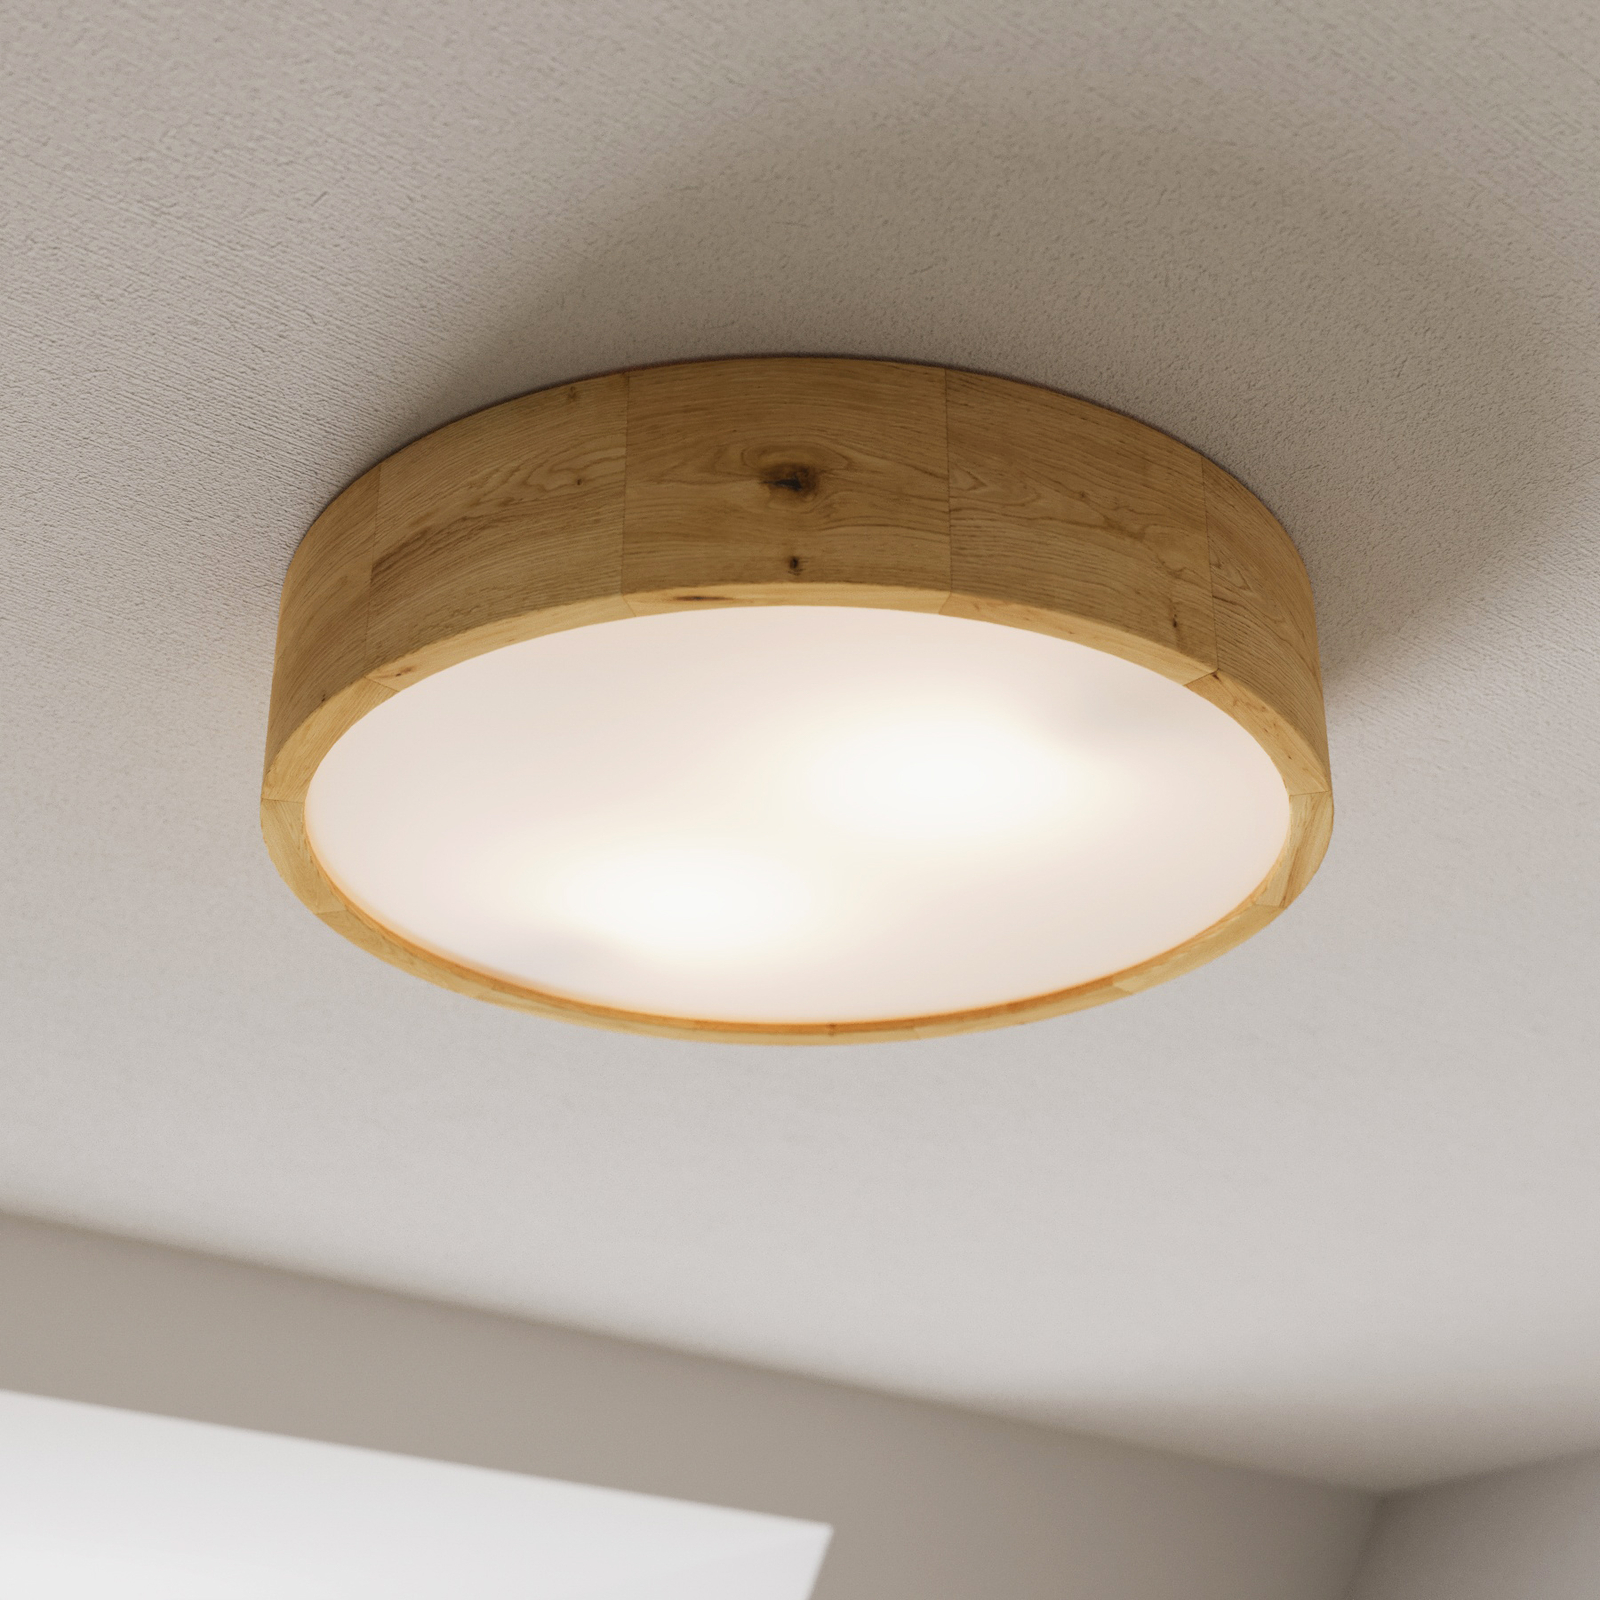 Kerio ceiling lamp, Ø 37 cm, natural oak